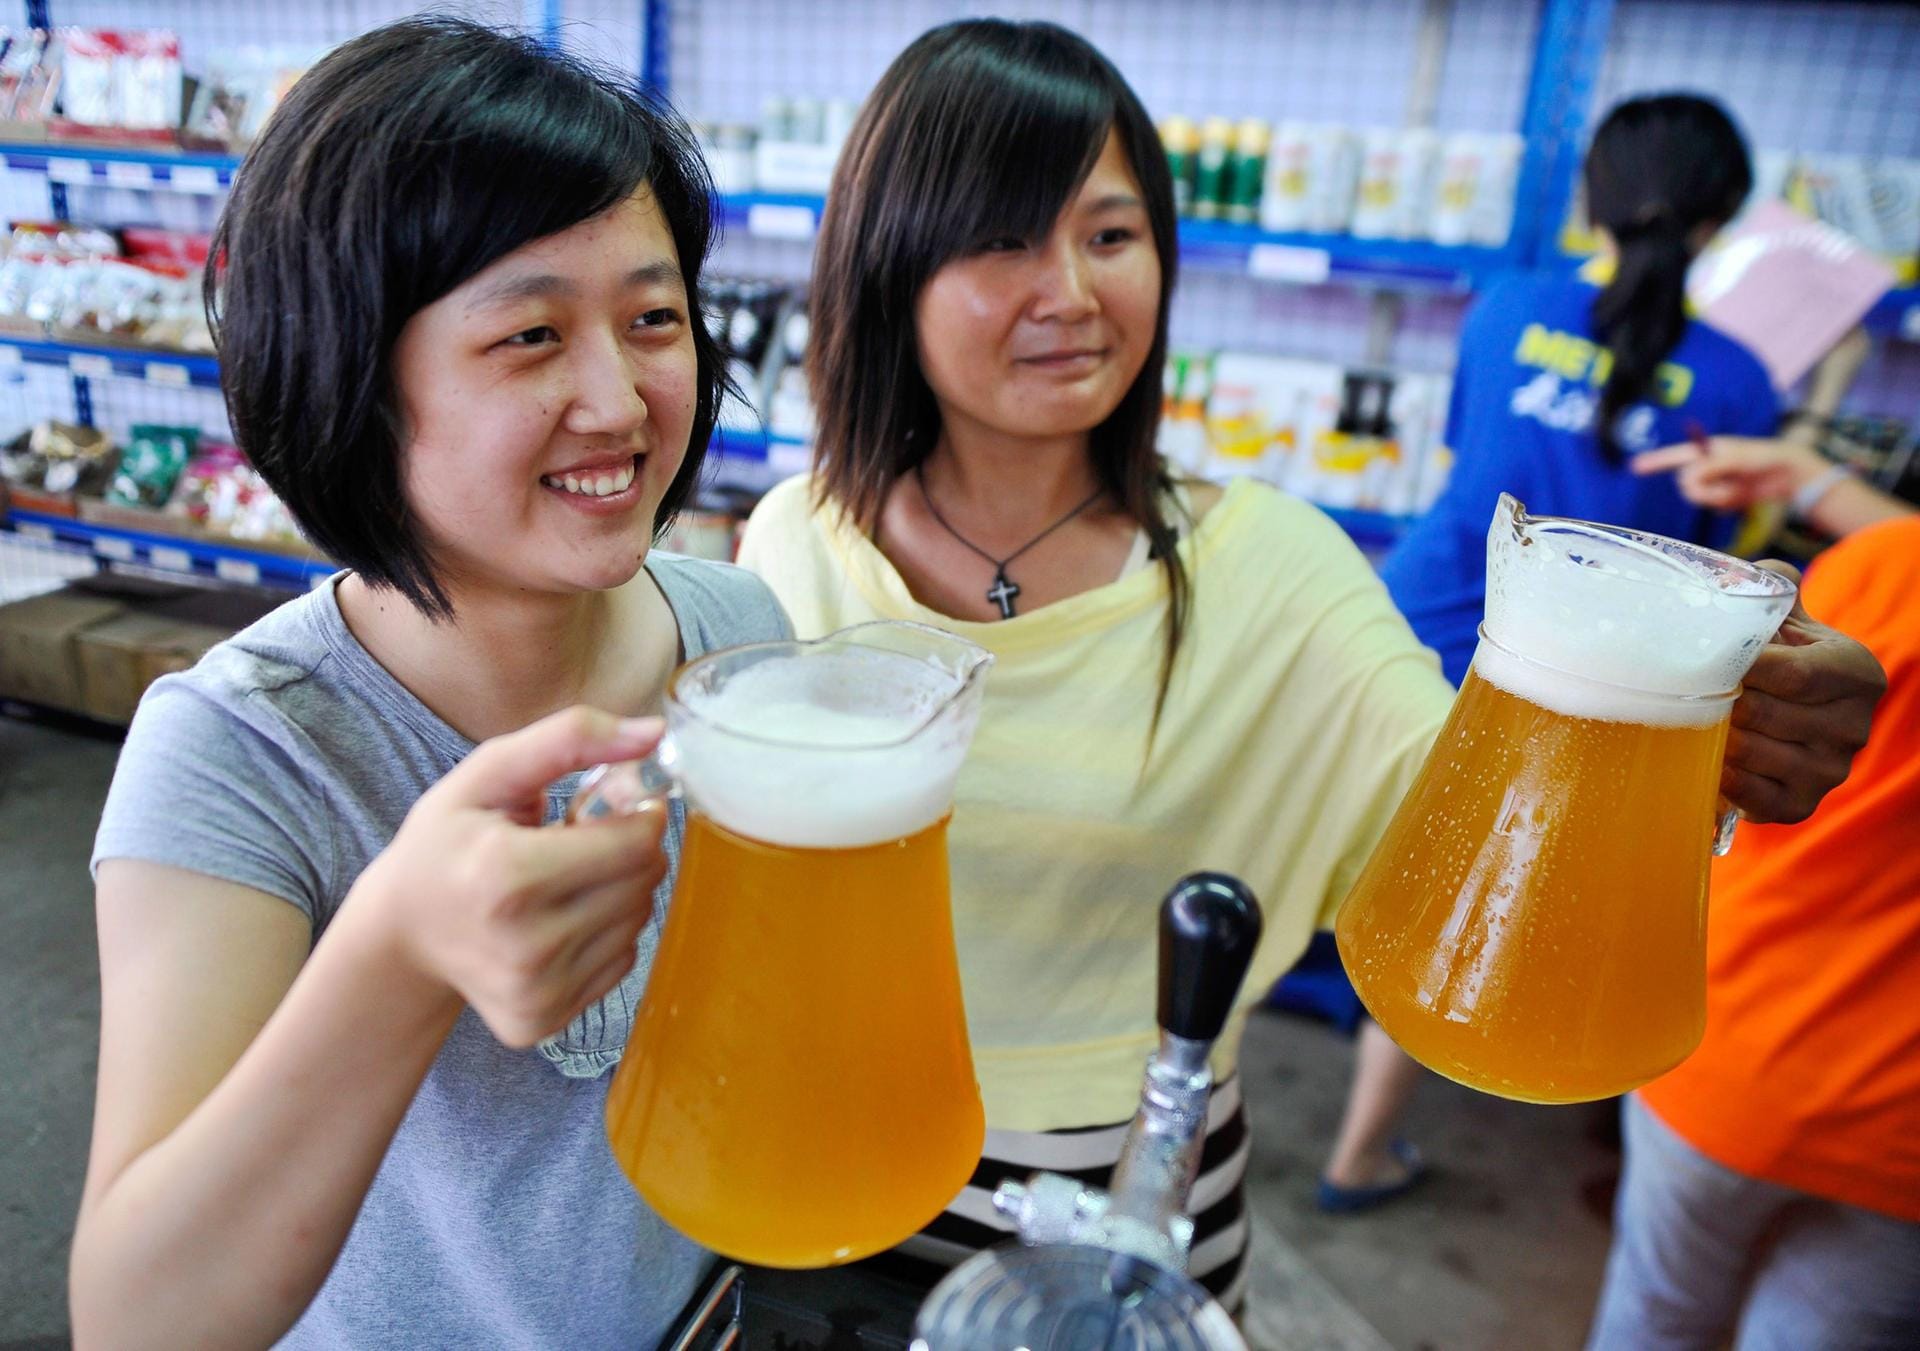 Zwei Chinesinnen probieren bei einem deutschen Bierfestival in der Stadt Qingdao Bier in Glaskrügen.